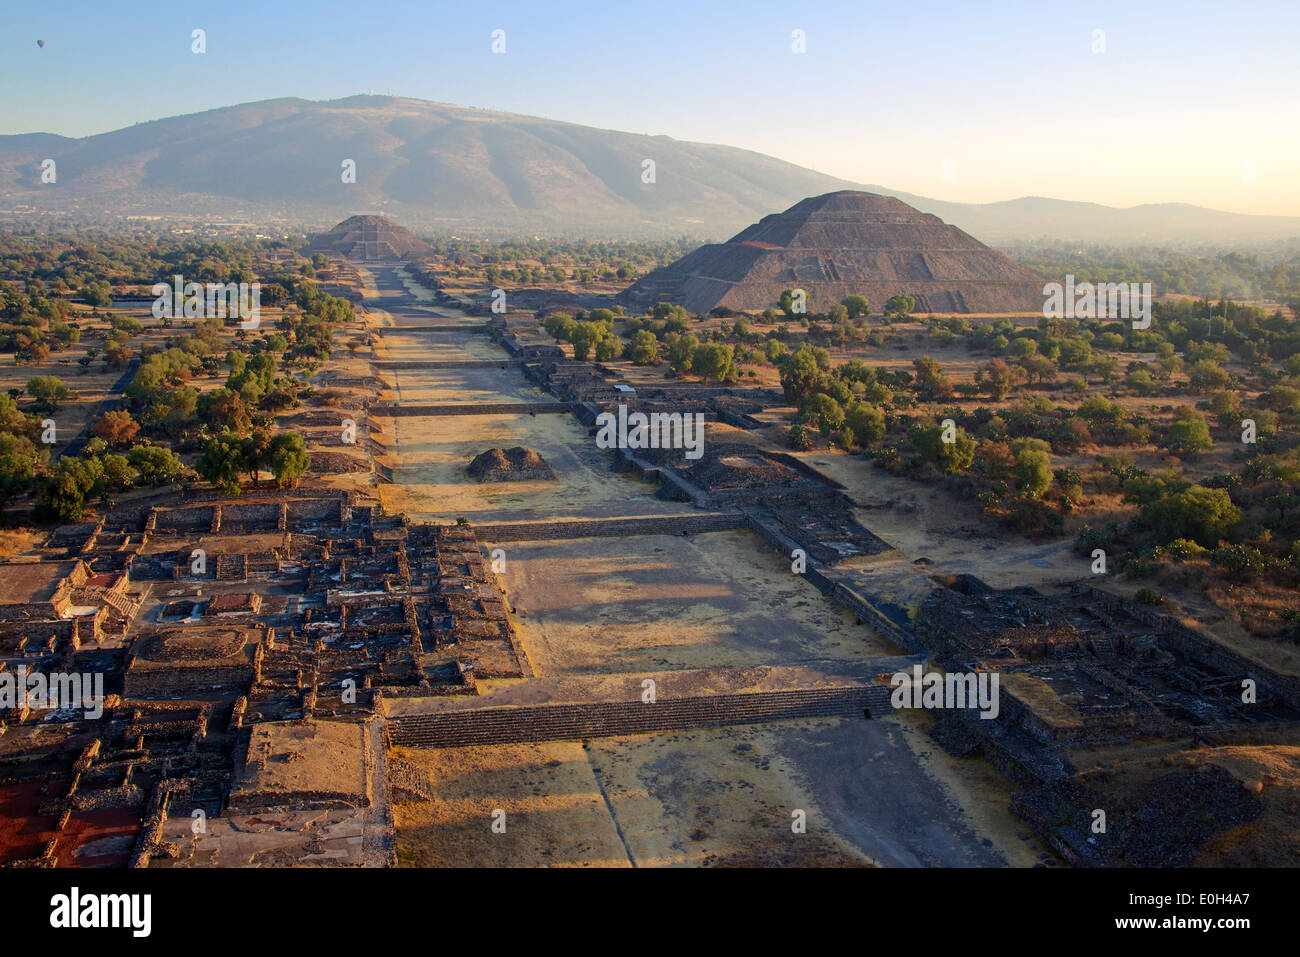 La mattina presto vista aerea Avenue dei morti e la Piramide del sole di Teotihuacan Messico Foto Stock